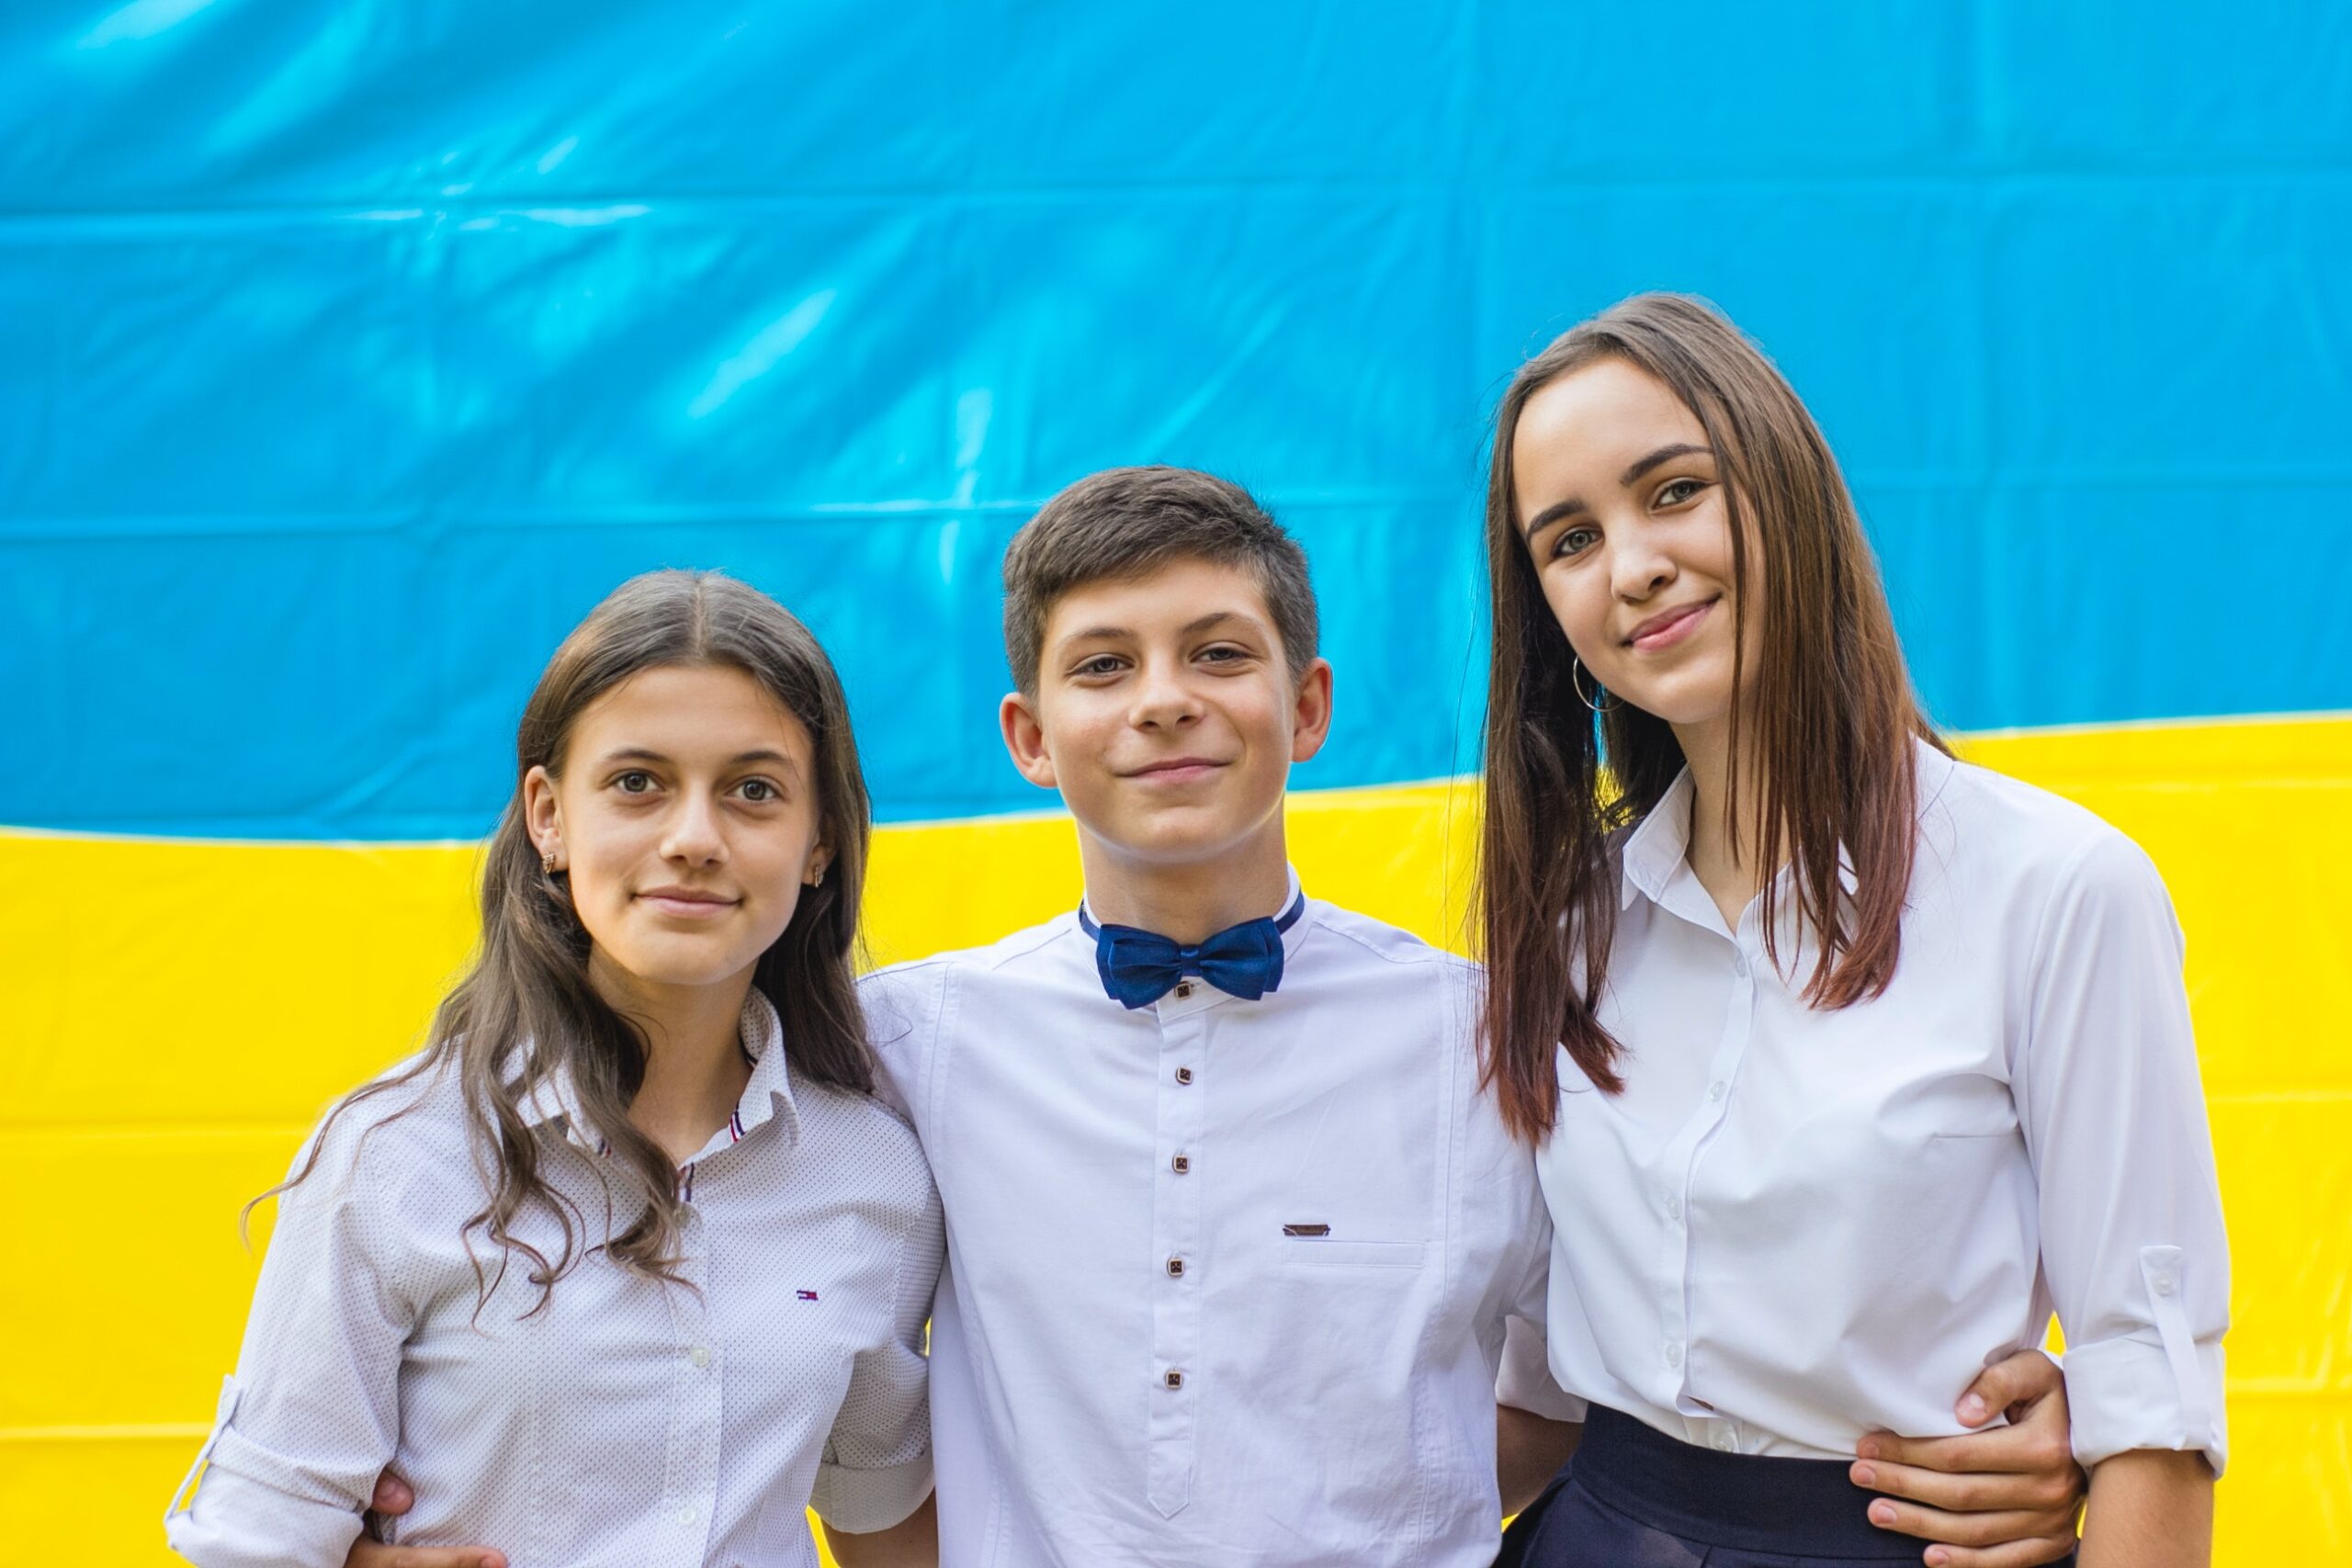 Teenagers in school uniforms